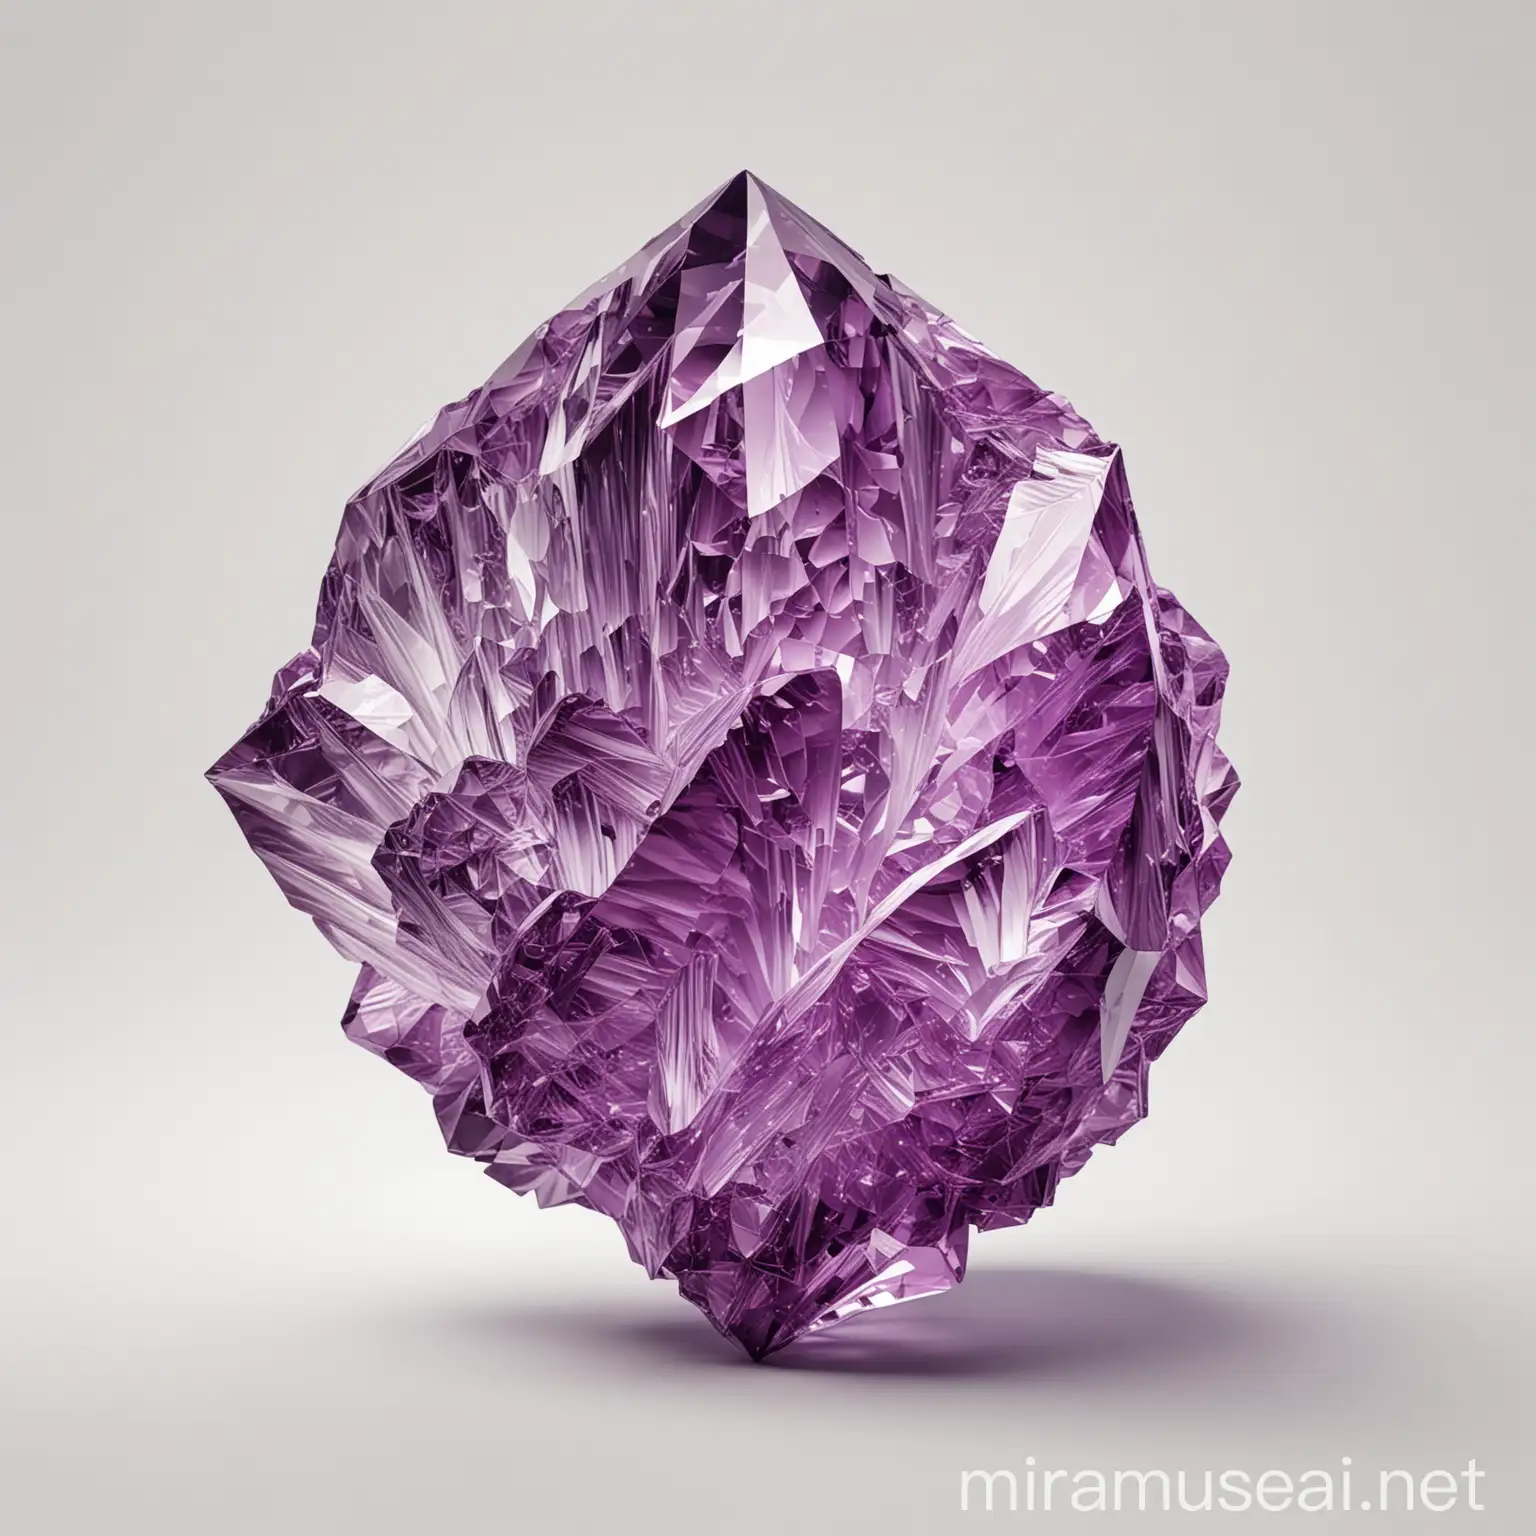 生成背景为纯白色的紫水晶图片